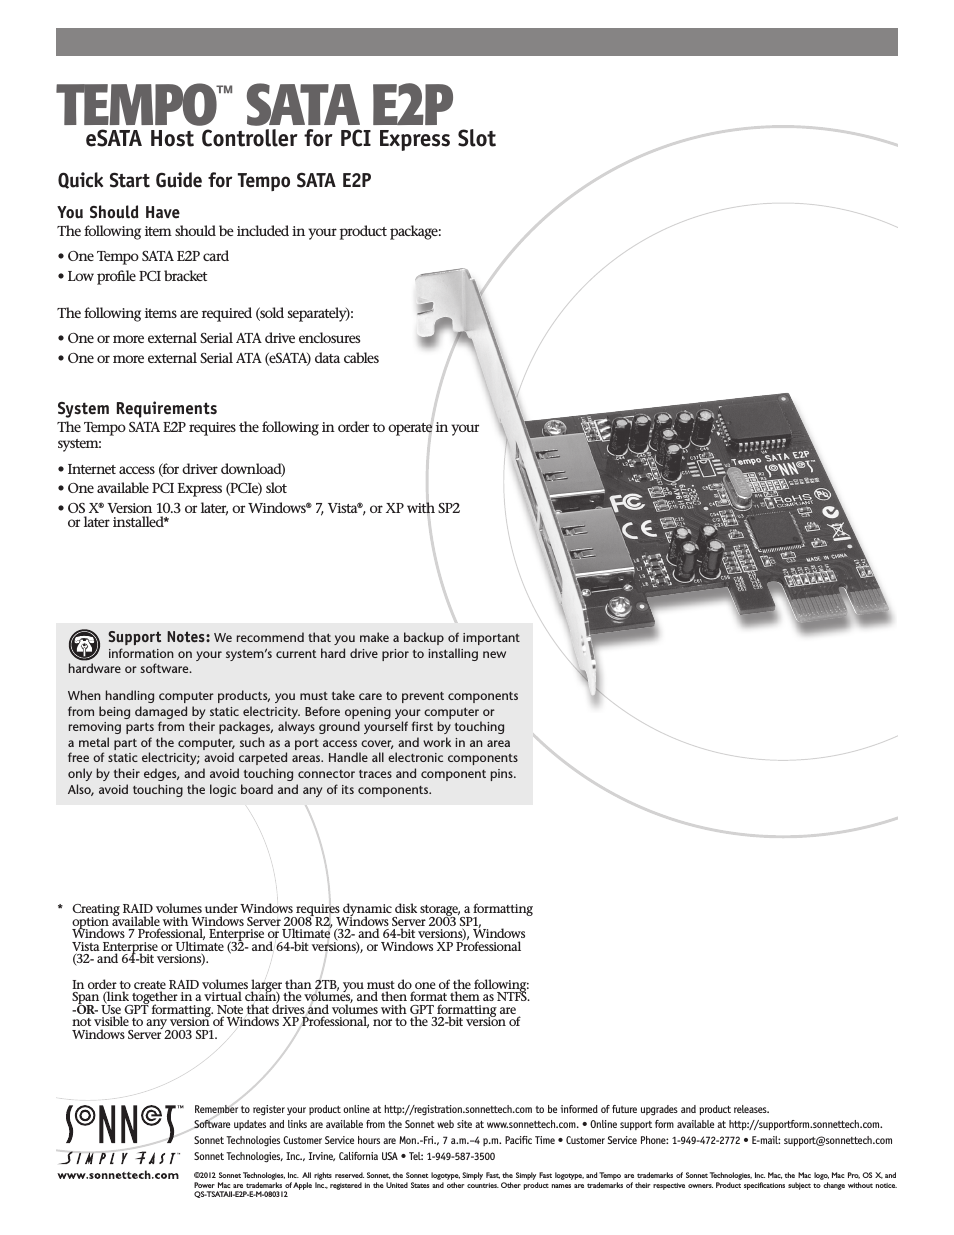 Tempo SATA E2P Serial ATA PCI Express Host Controller Card